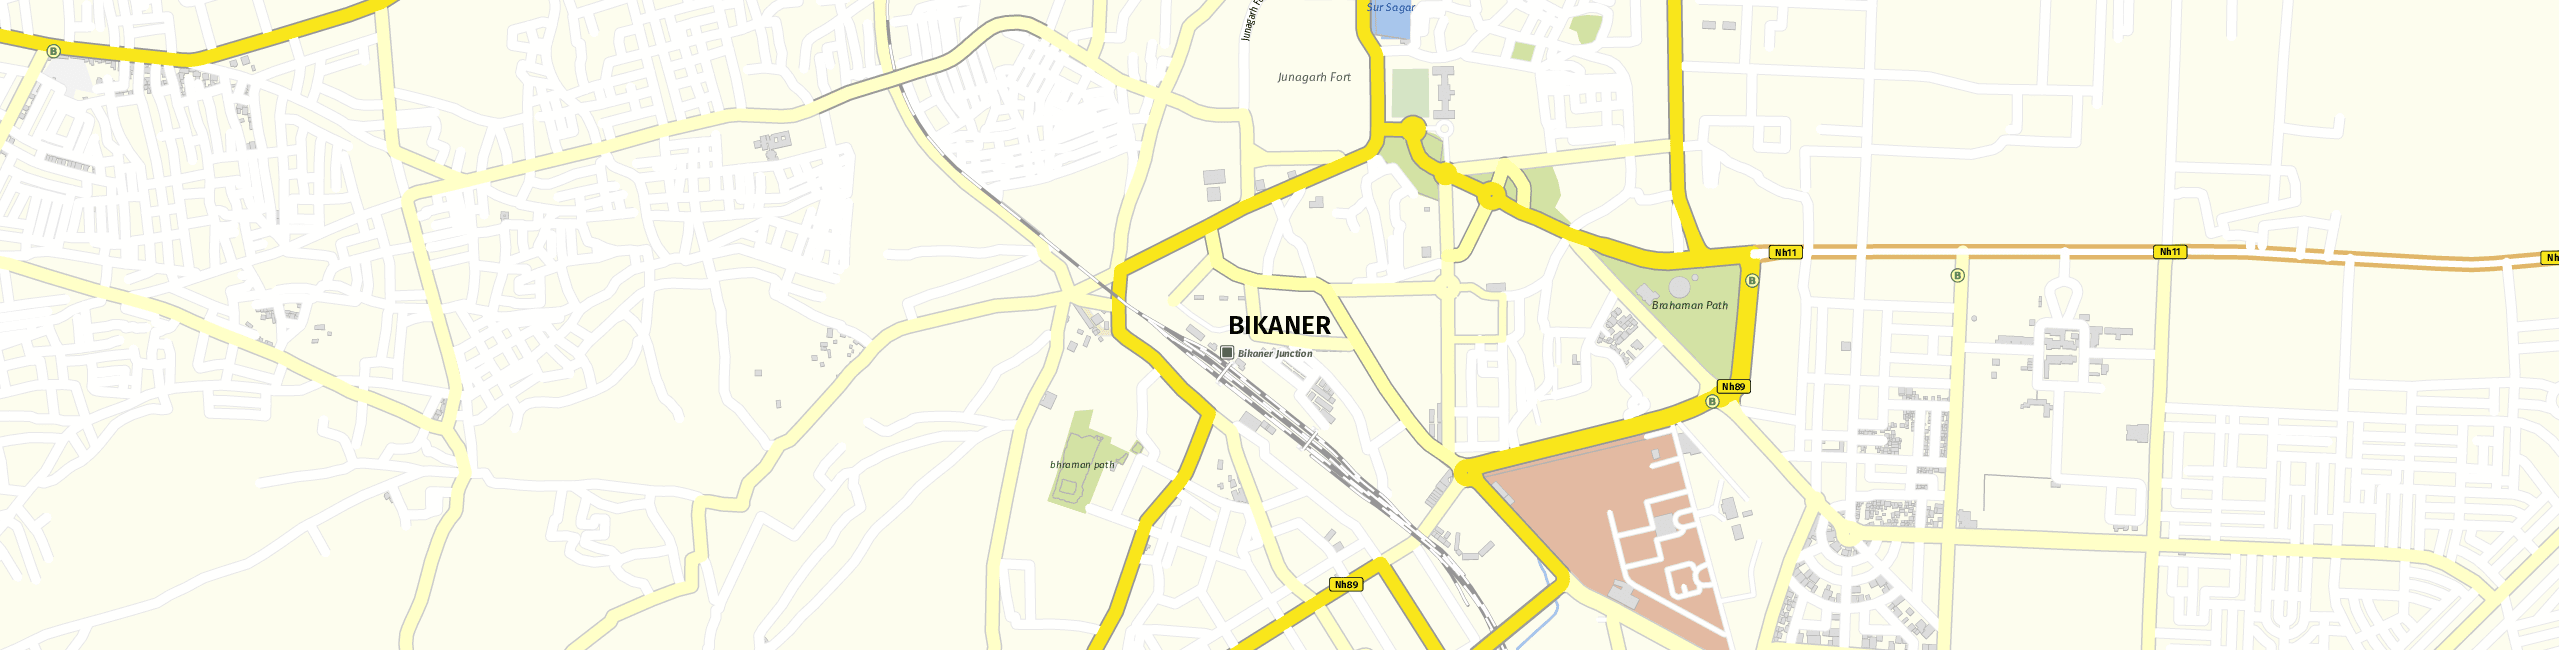 Stadtplan Bikaner zum Downloaden.